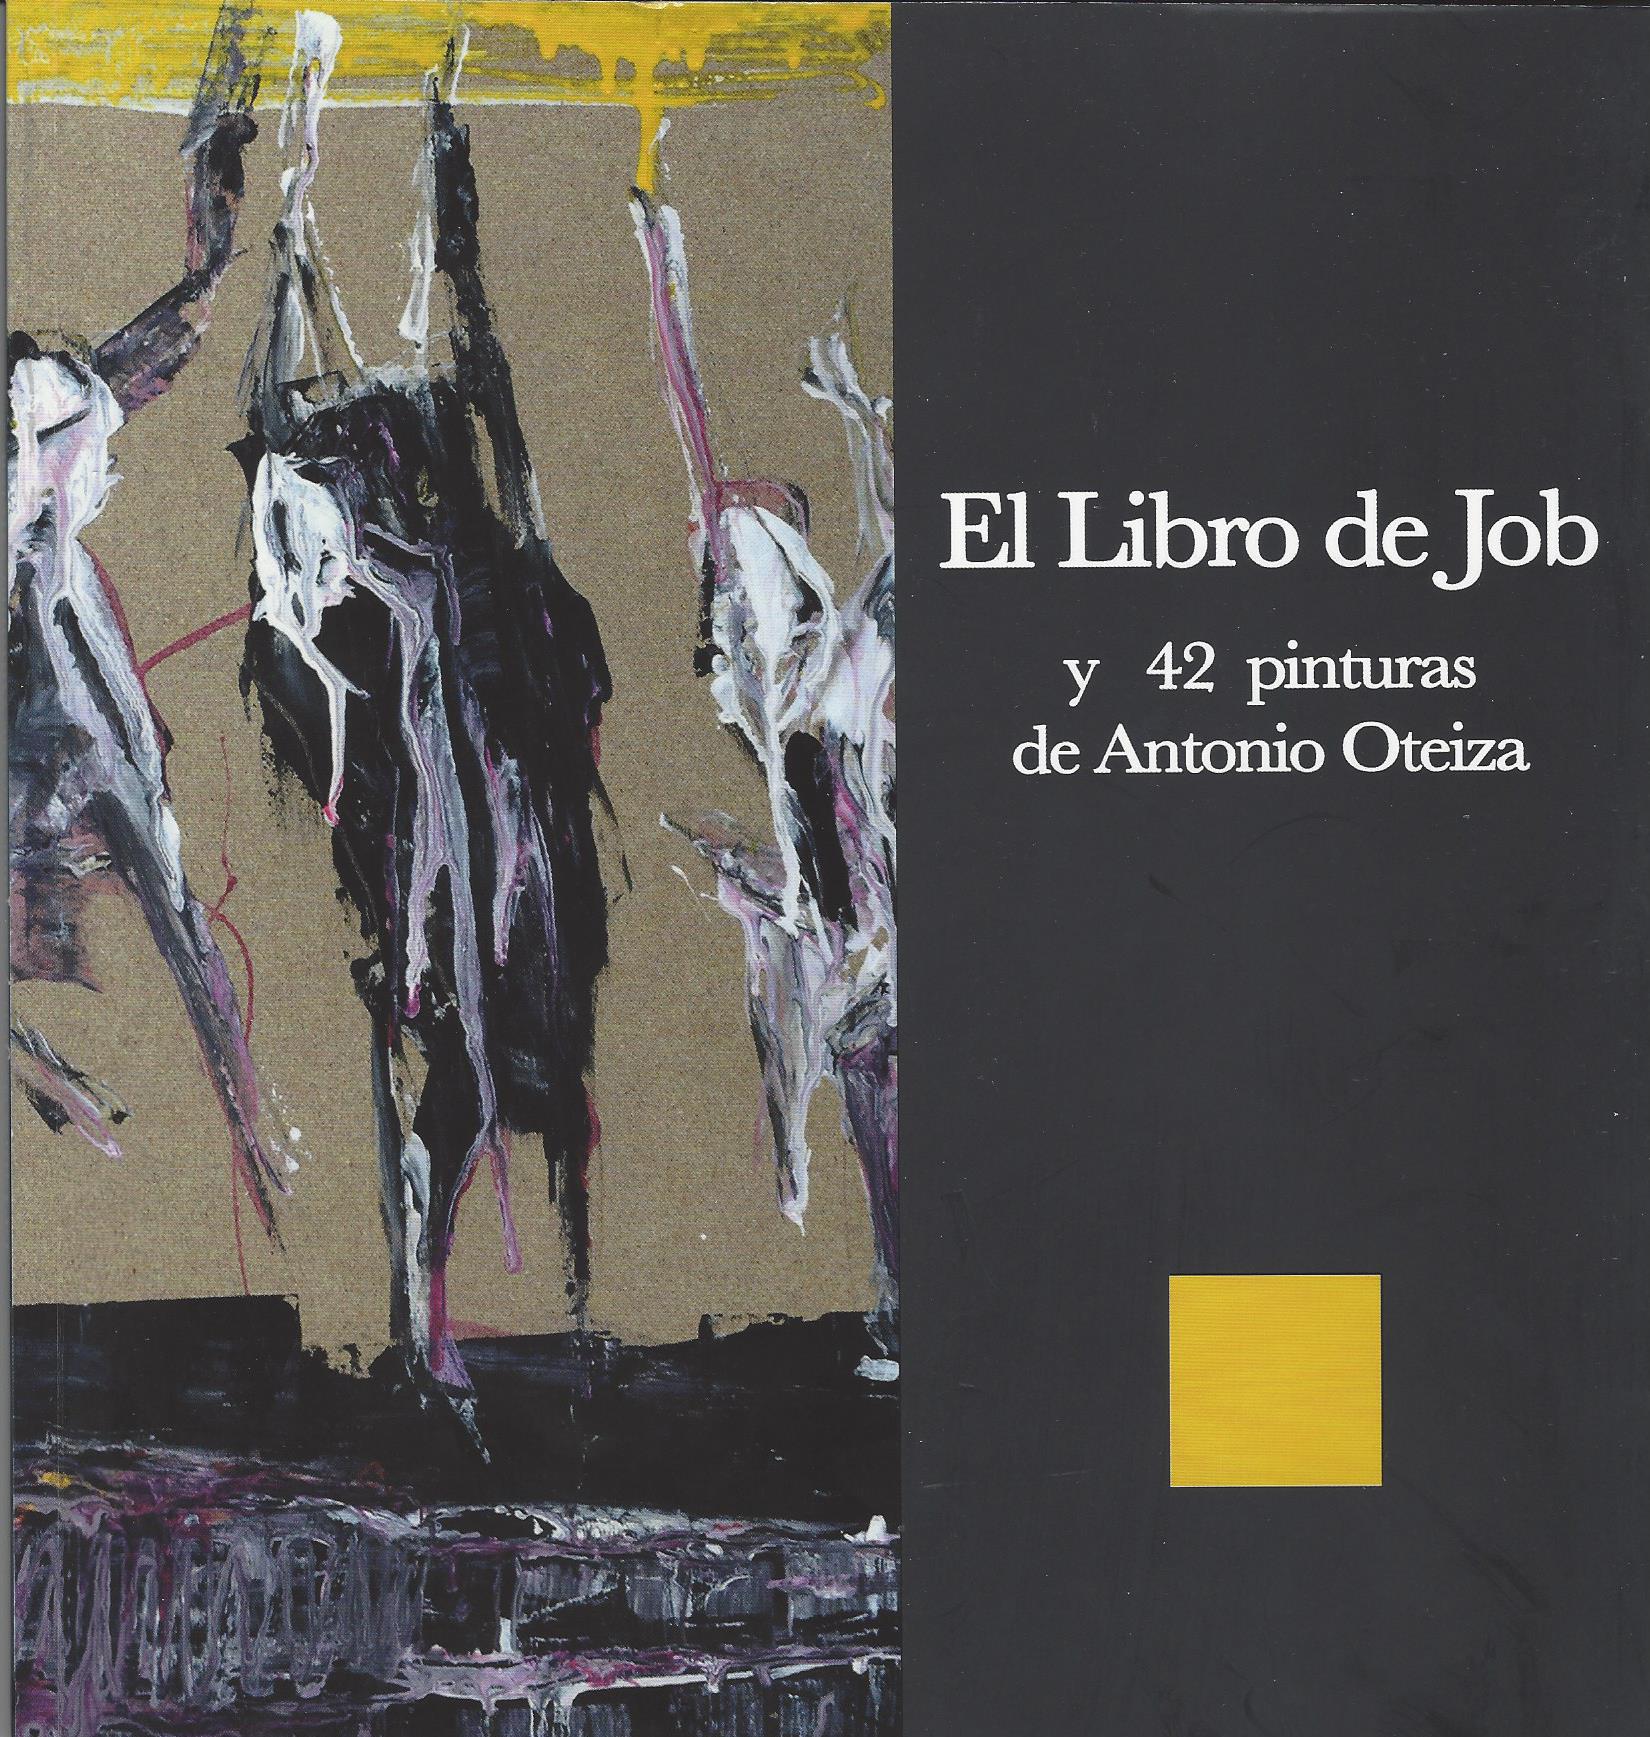 El libro de Job y 42 pinturas de Antonio Oteiza